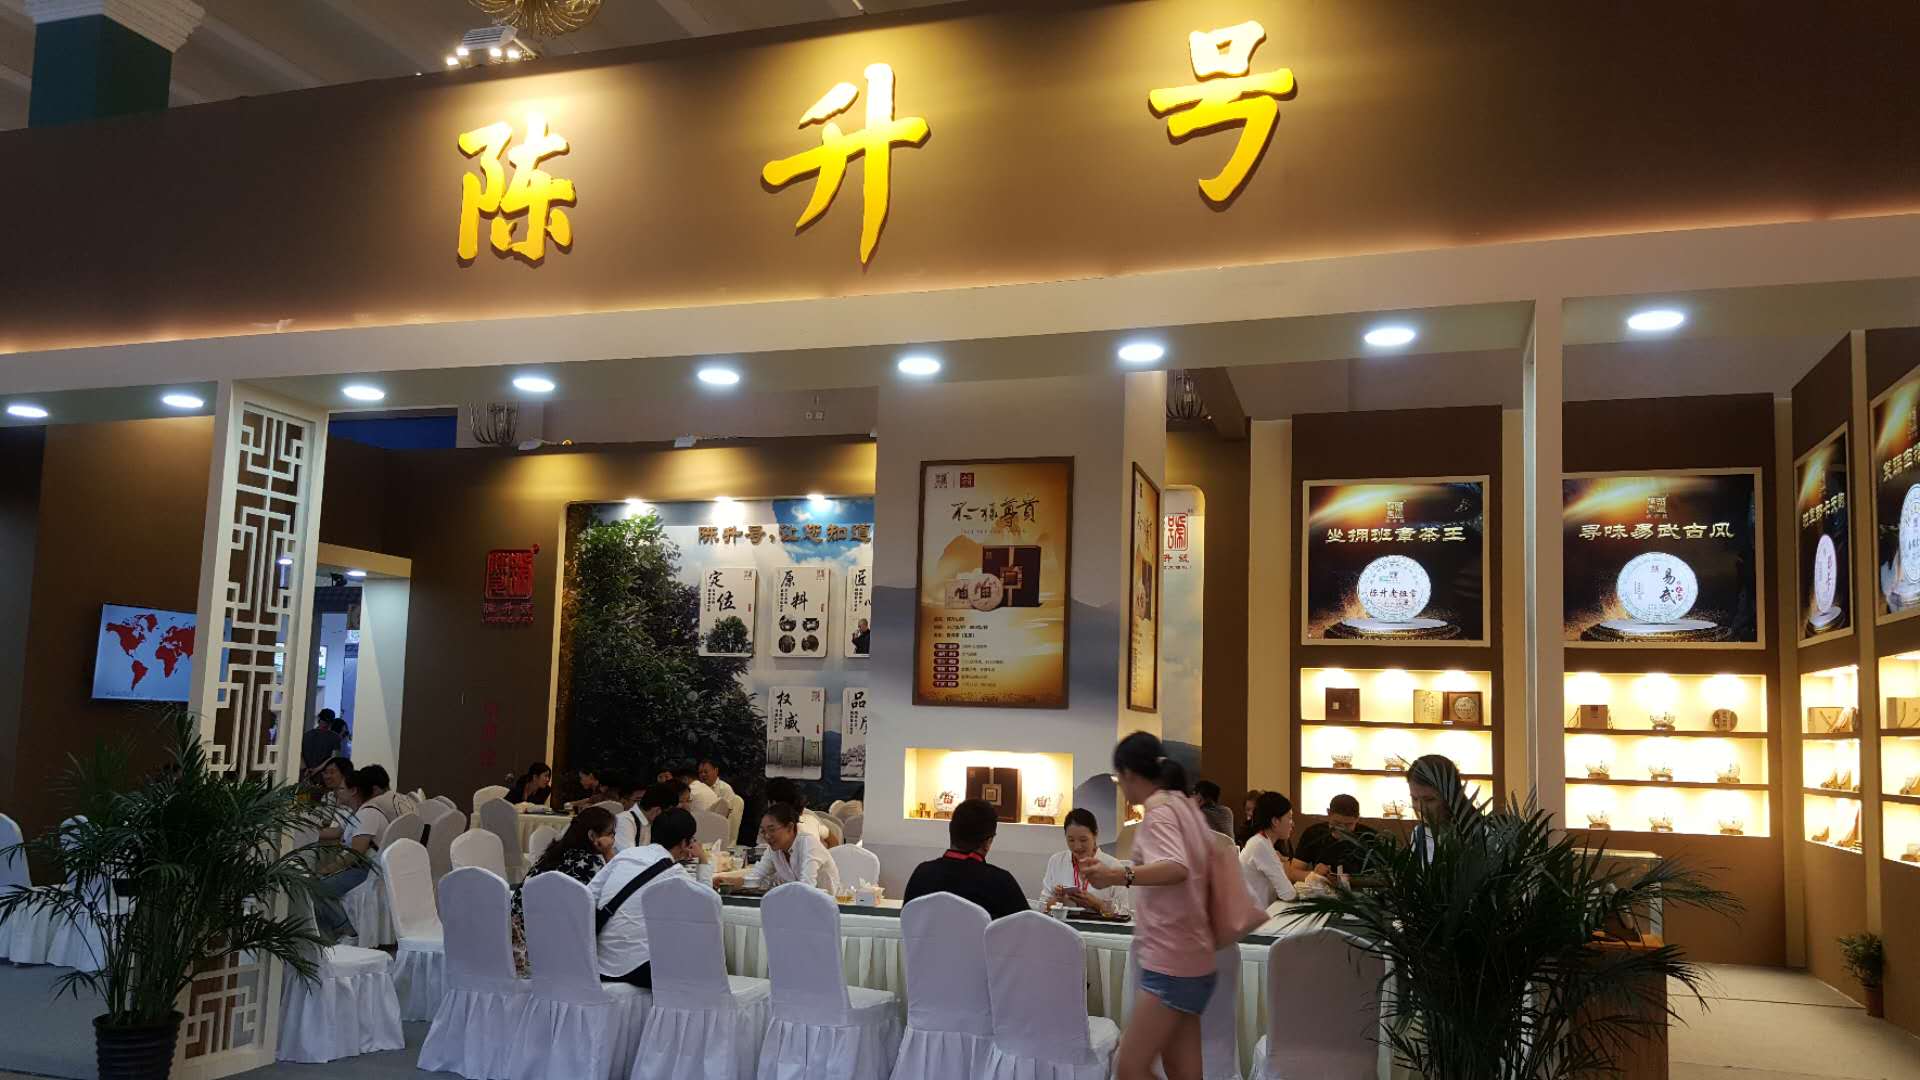 图片直播丨2019北京“两展一节”——陈升号茶业展区